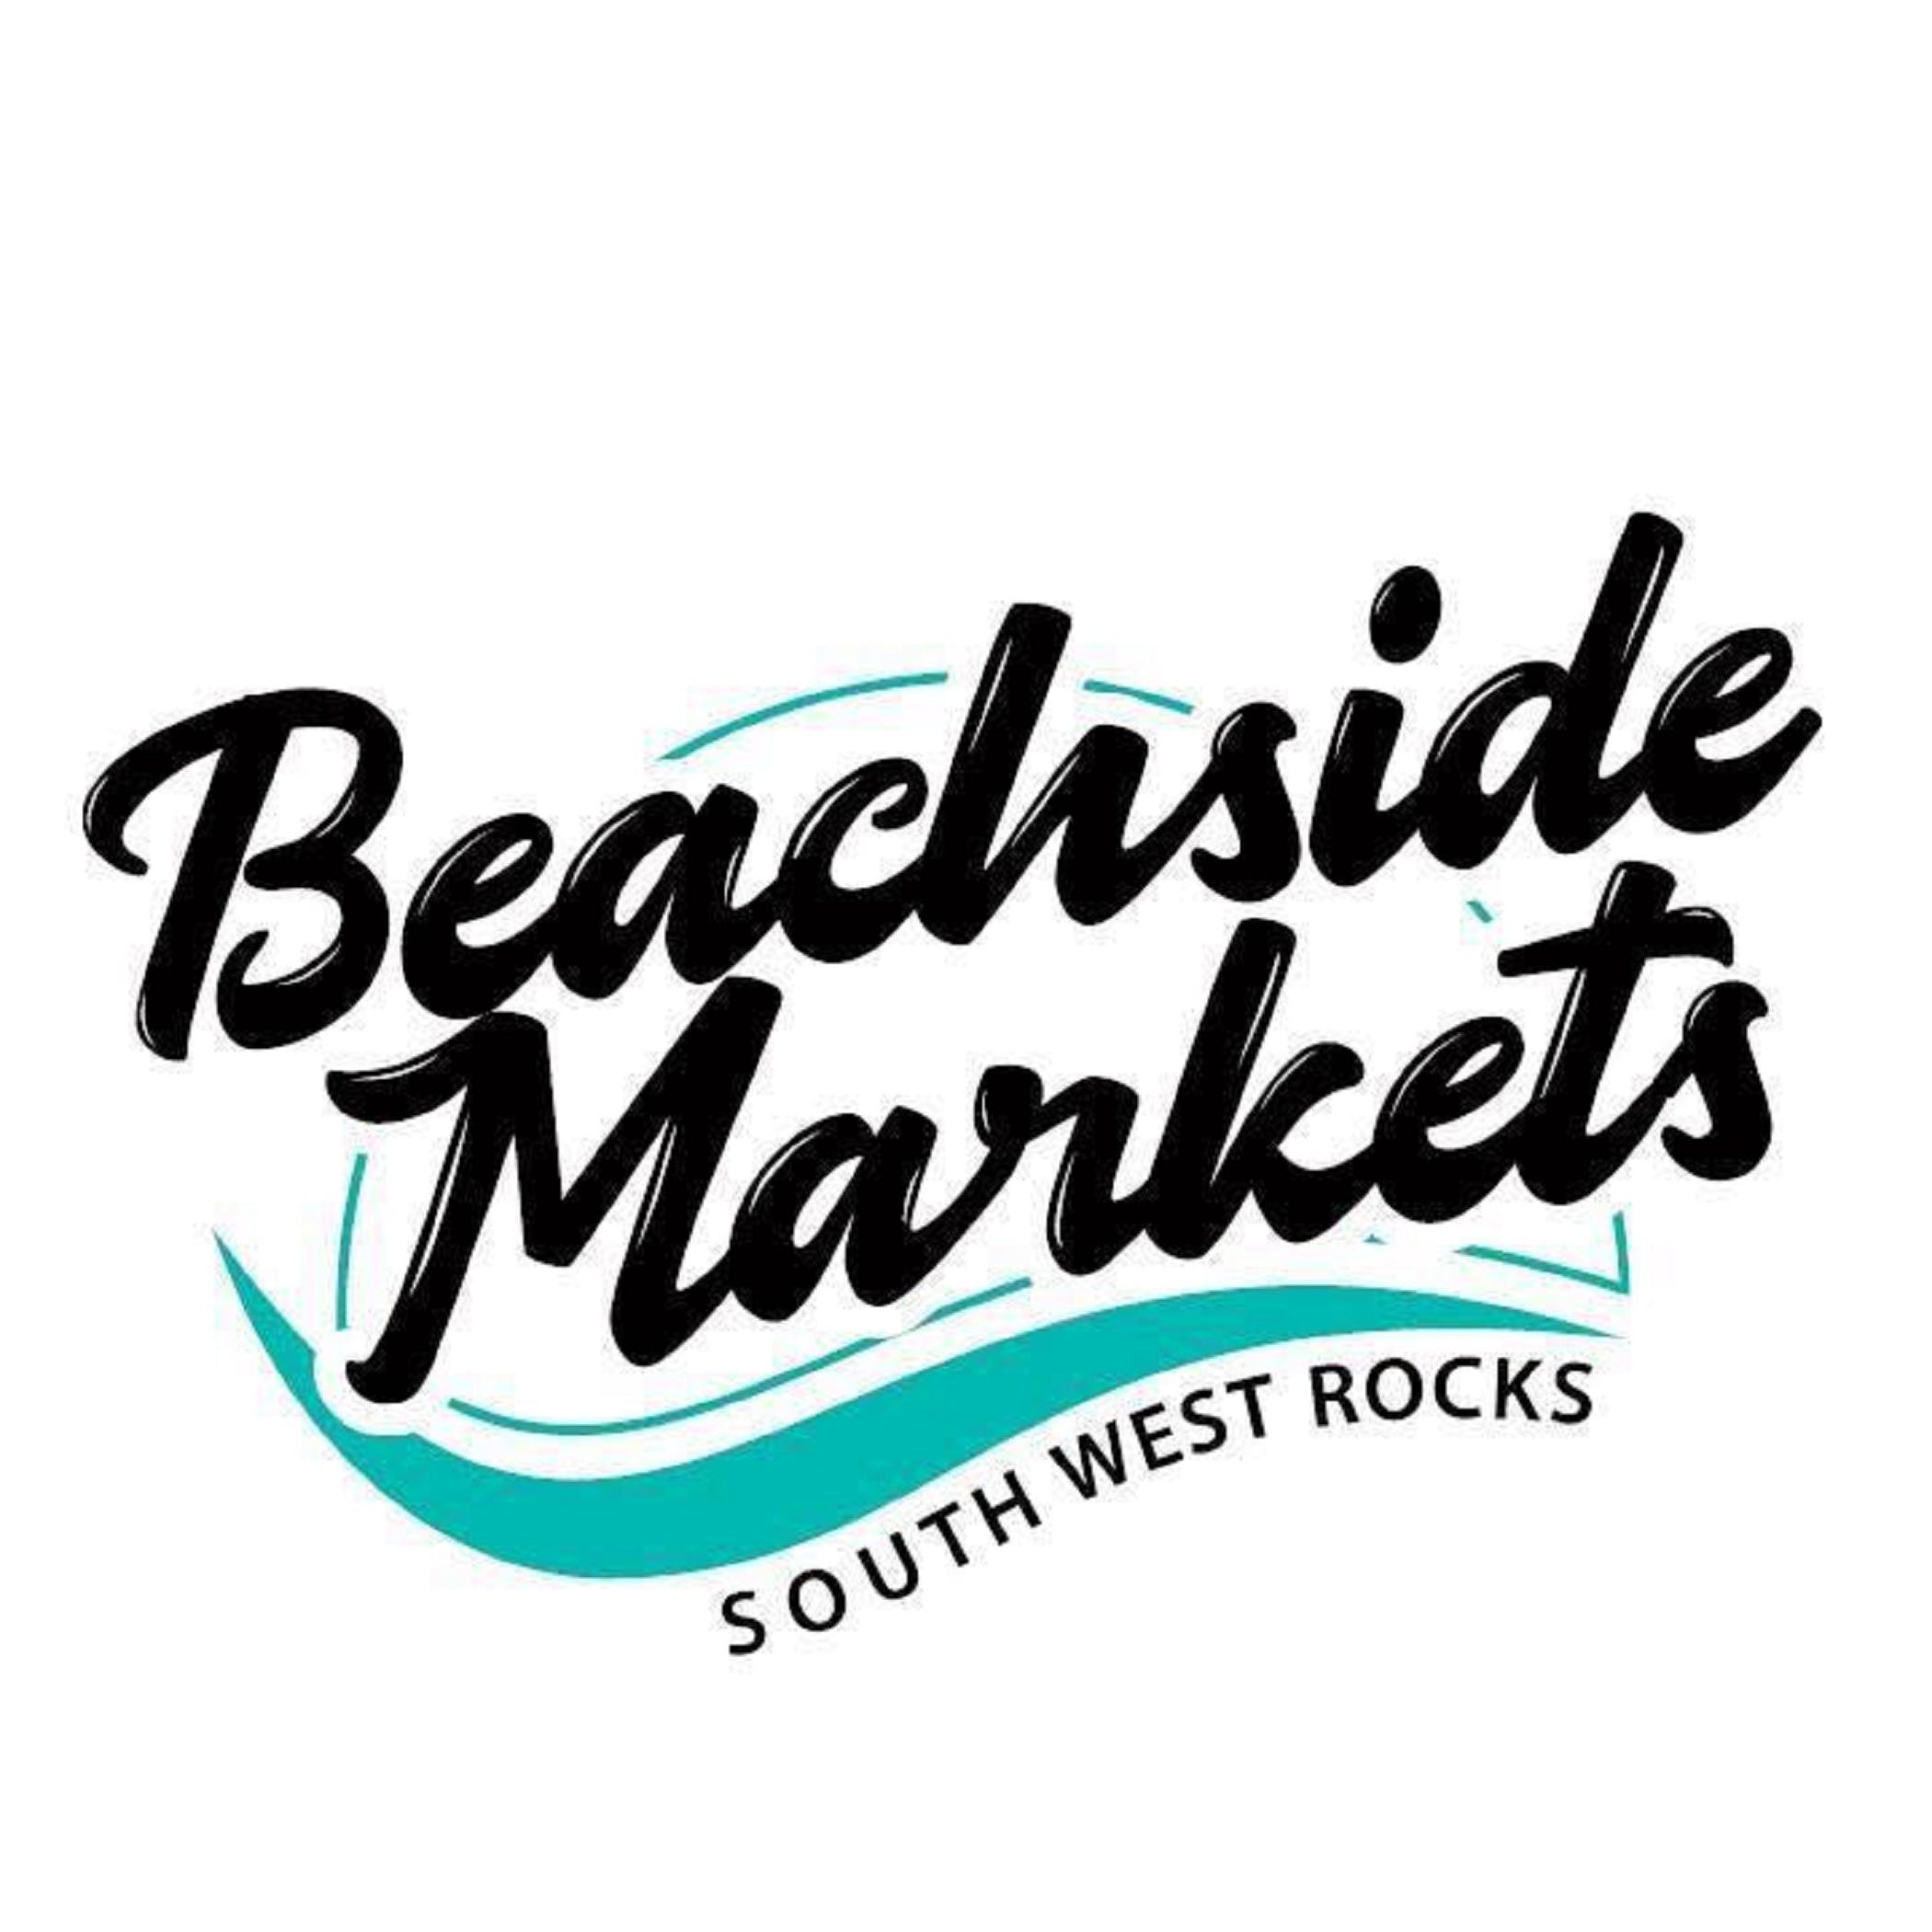 Beachside Markets South West Rocks - Accommodation Brunswick Heads